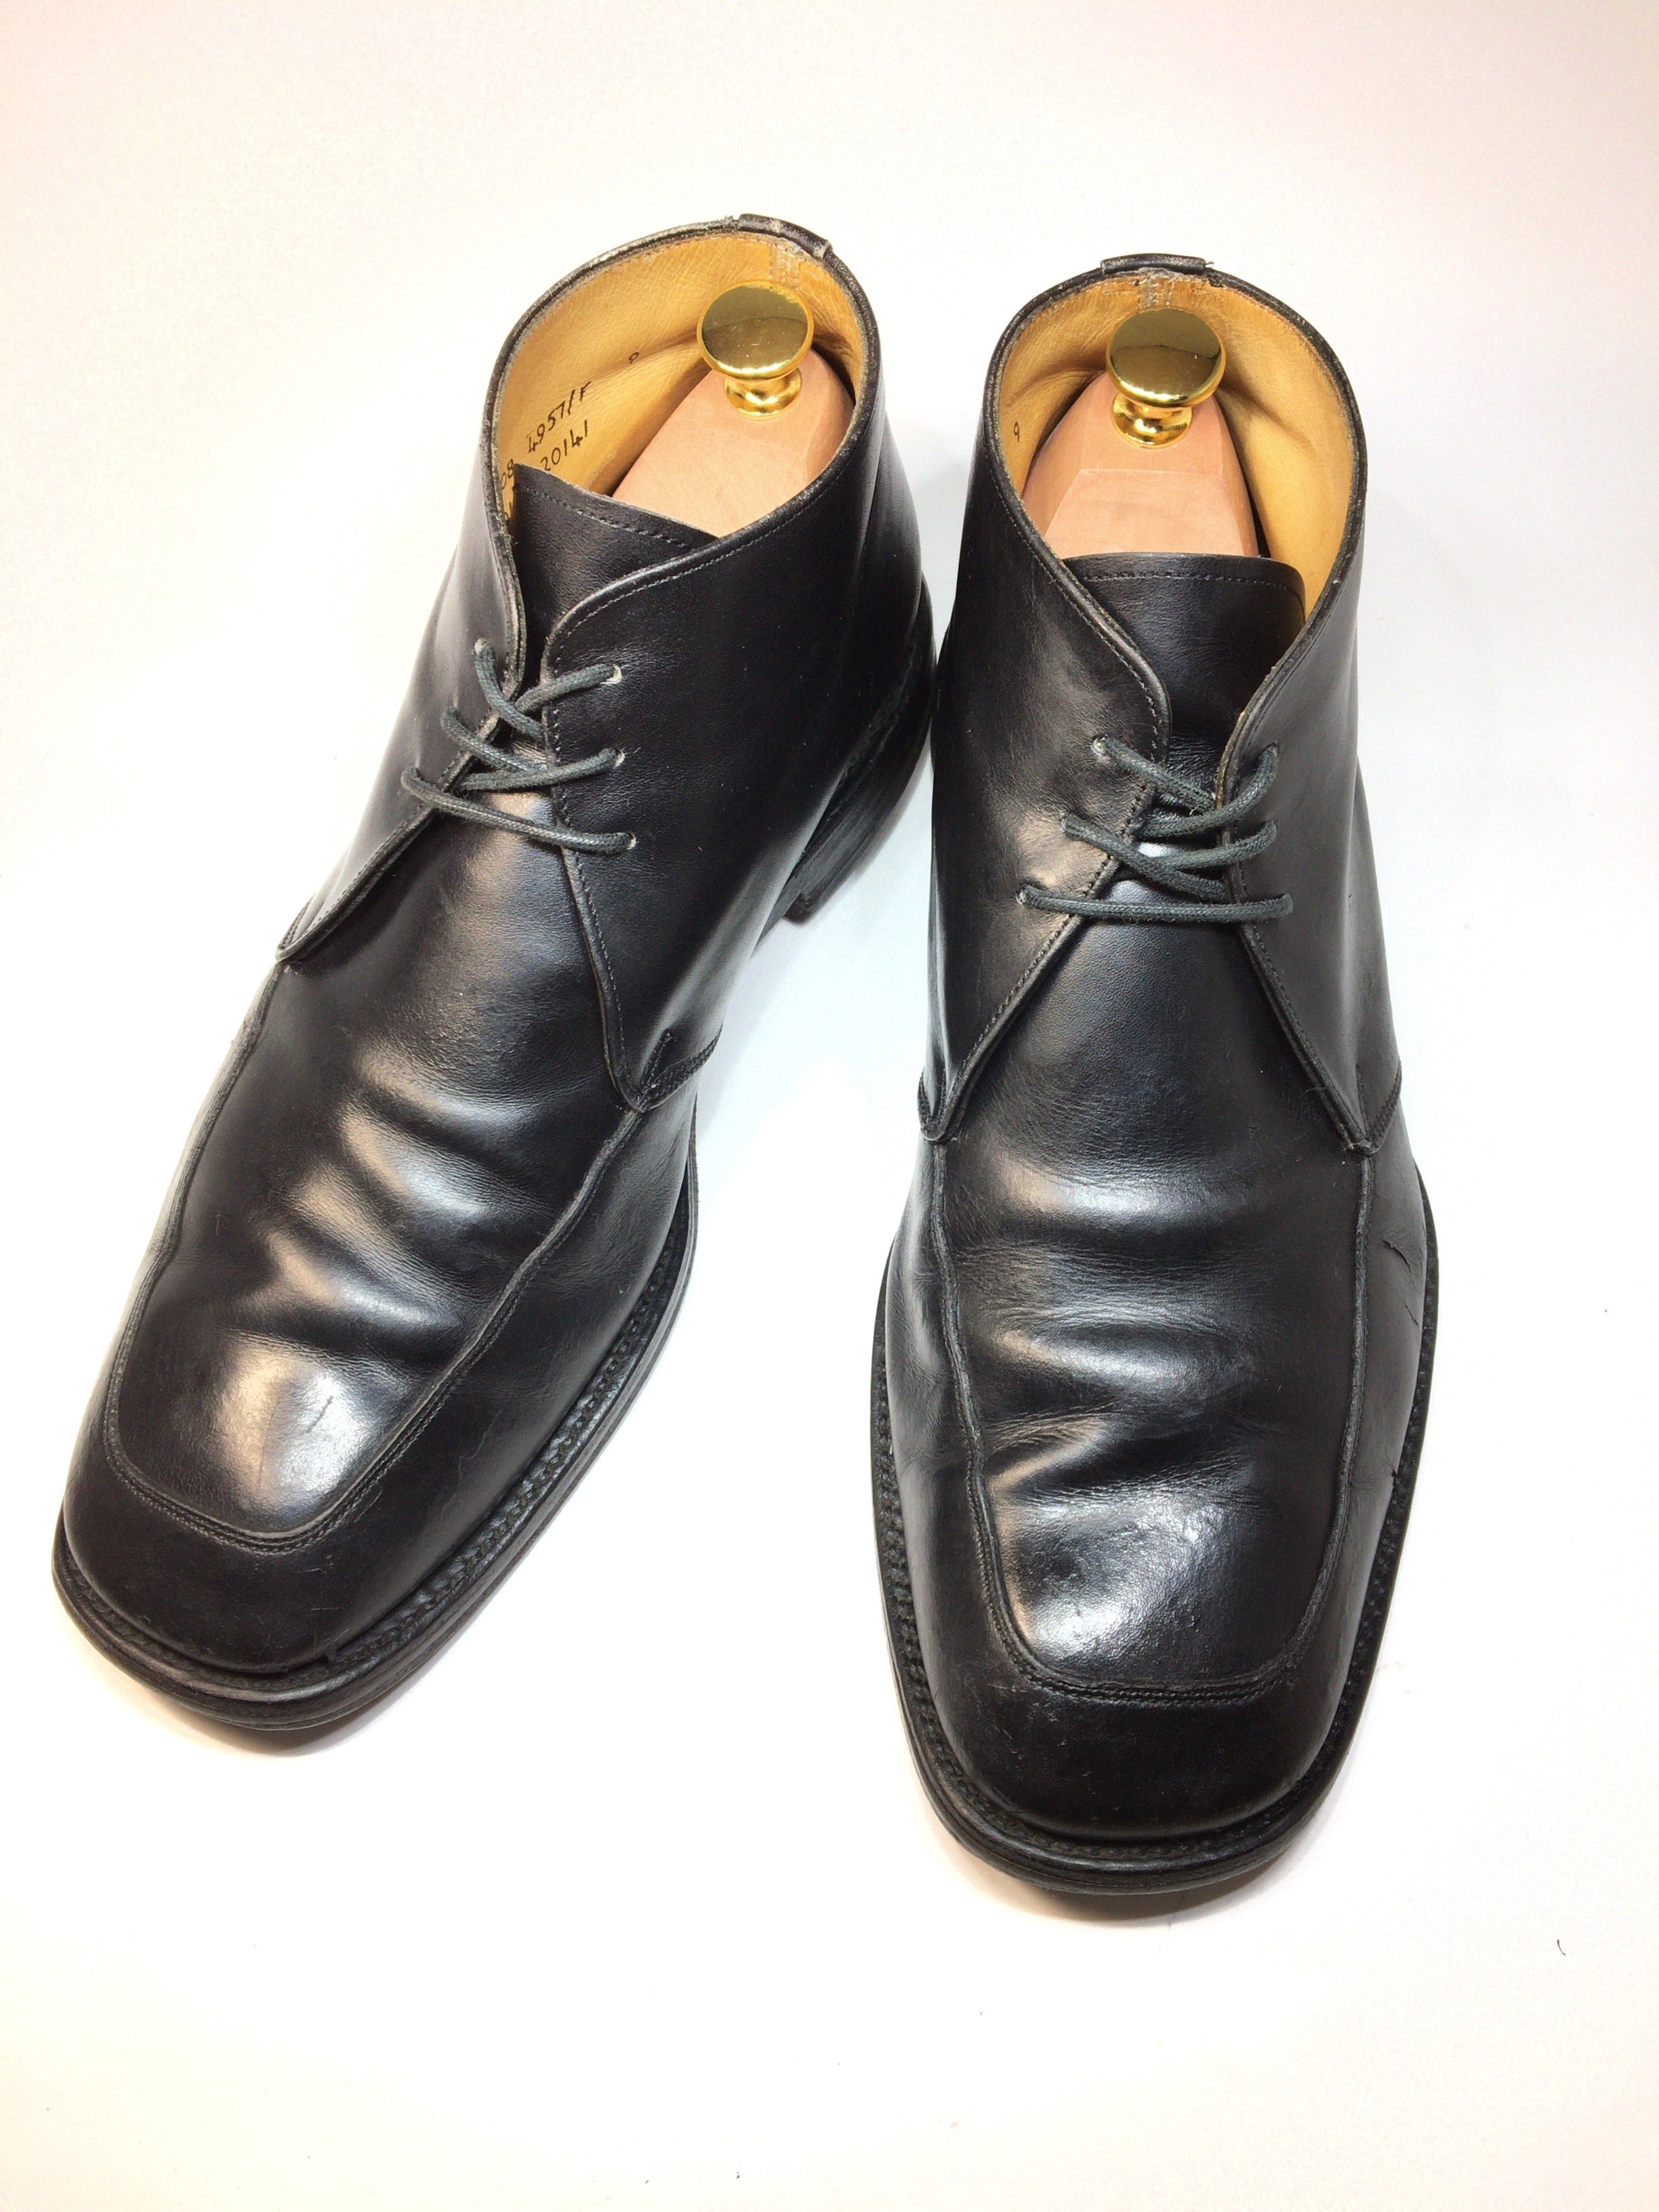 ポールスミス Paulsmith チャッカブーツ 27 5センチ 中古靴 革靴 ブーツ通販専門店 Dafsmart ダフスマート Online Shop